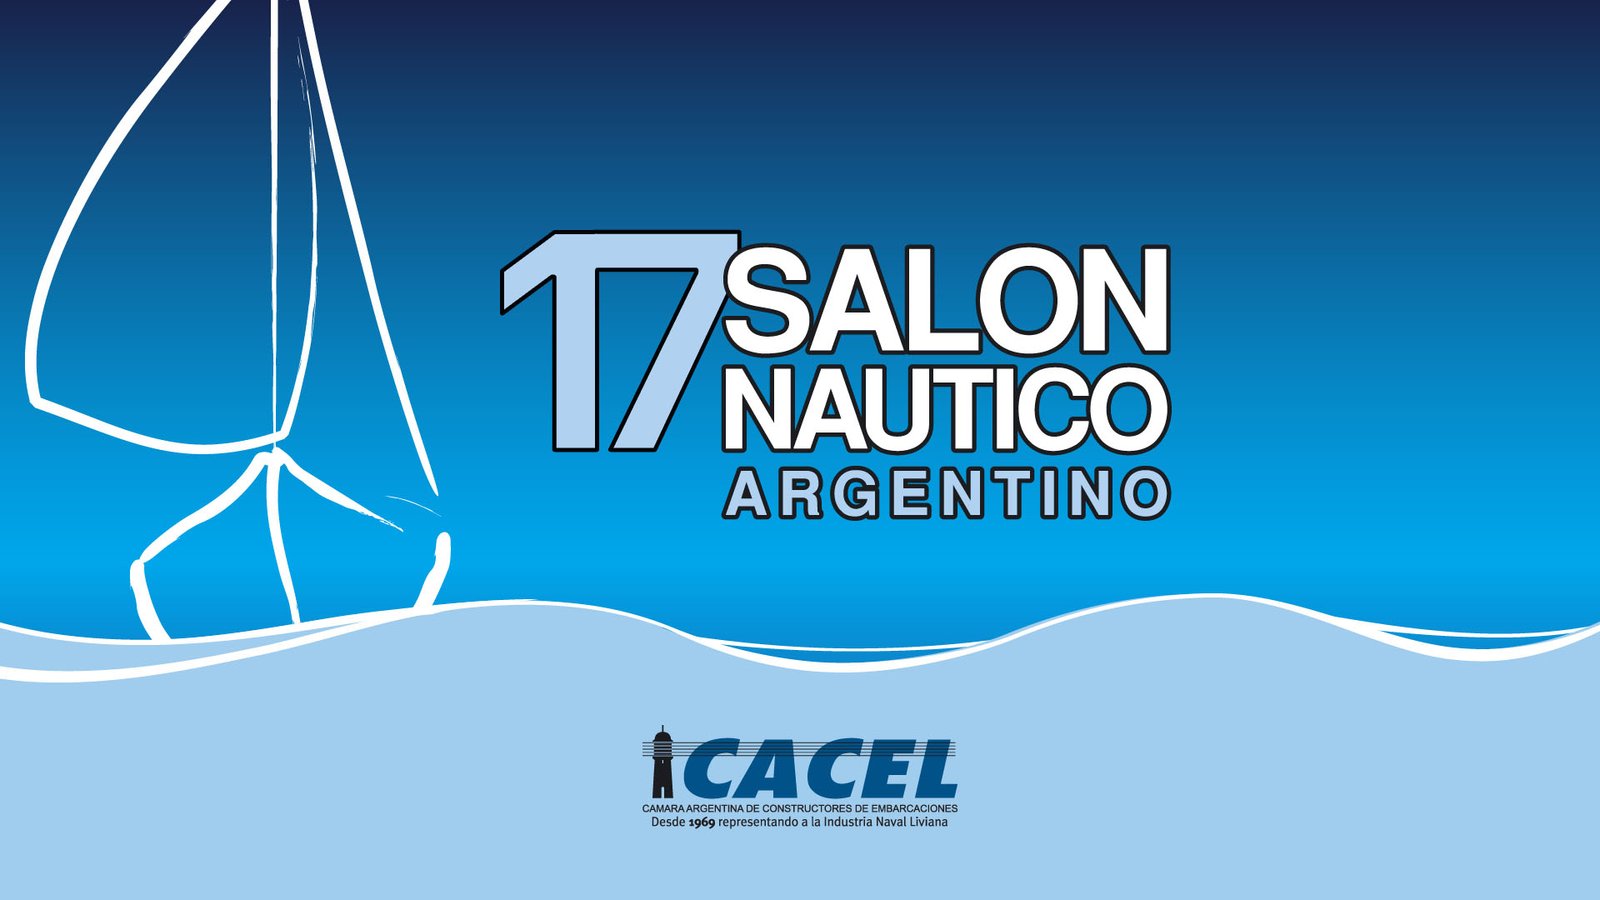 17 salon nautico argentino